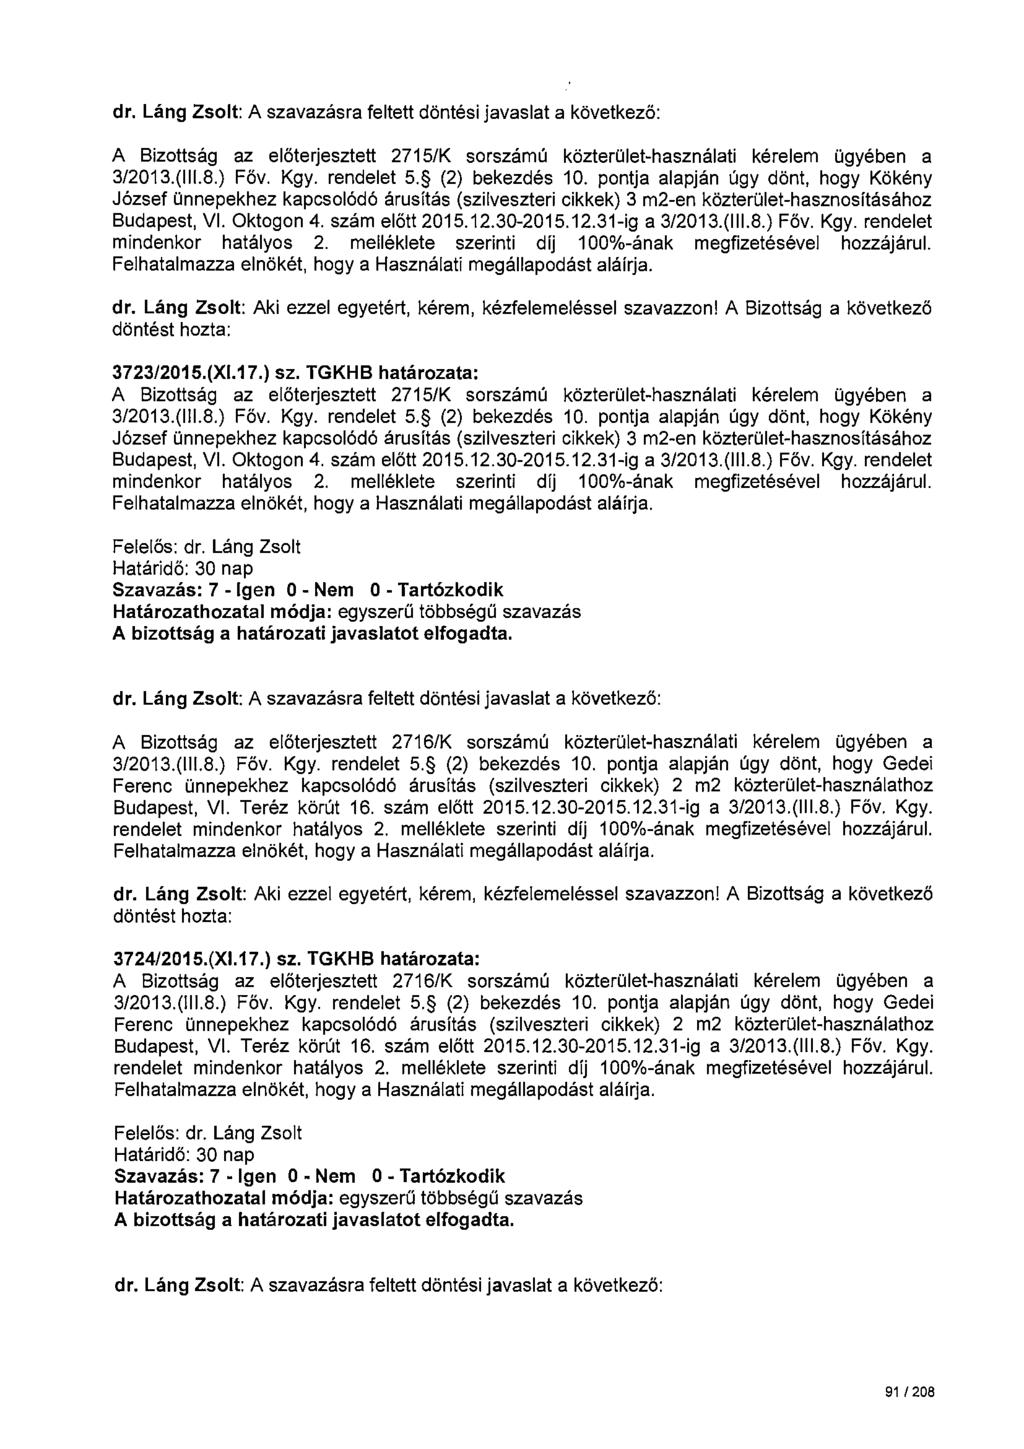 dr. Láng Zsolt: A szavazásra feltett döntési javaslat a következö: A Bizottság az elöterjesztett 2715/K sorszámú közterület-használati kérelem ügyében a 3/2013.(111.8.) Föv. Kgy. rendelet 5.